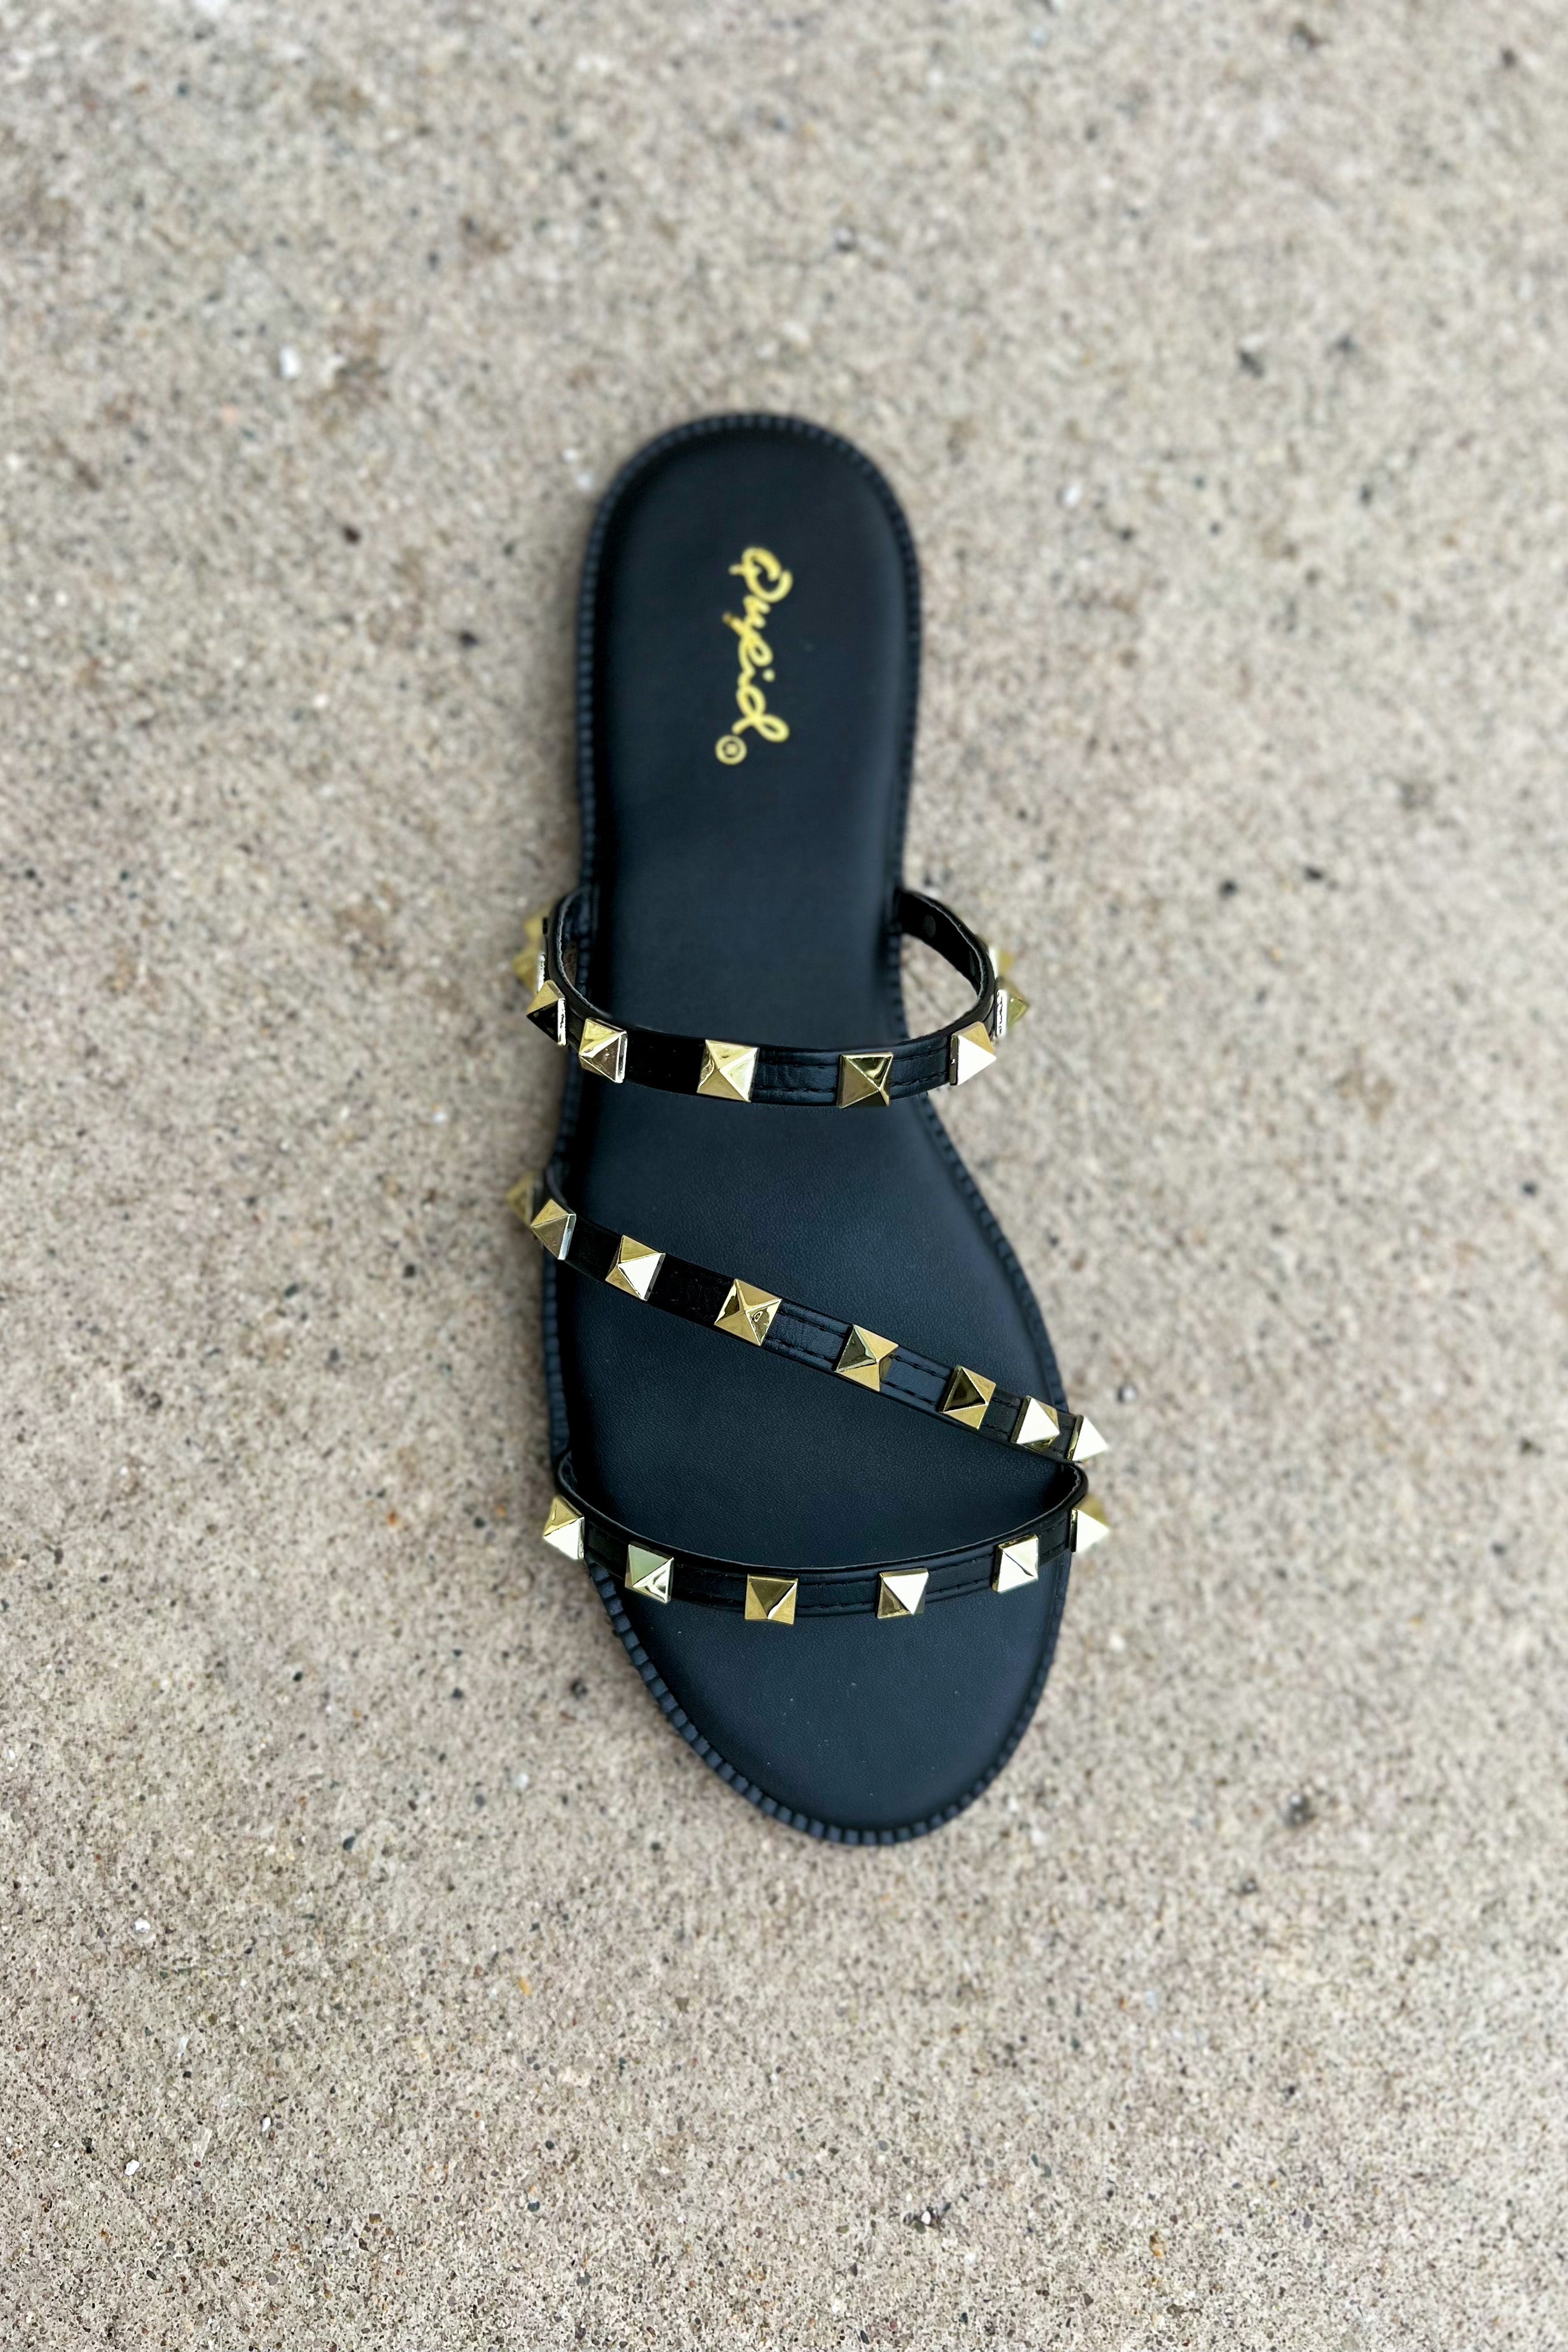 Desmond Studded Sandals (Black)